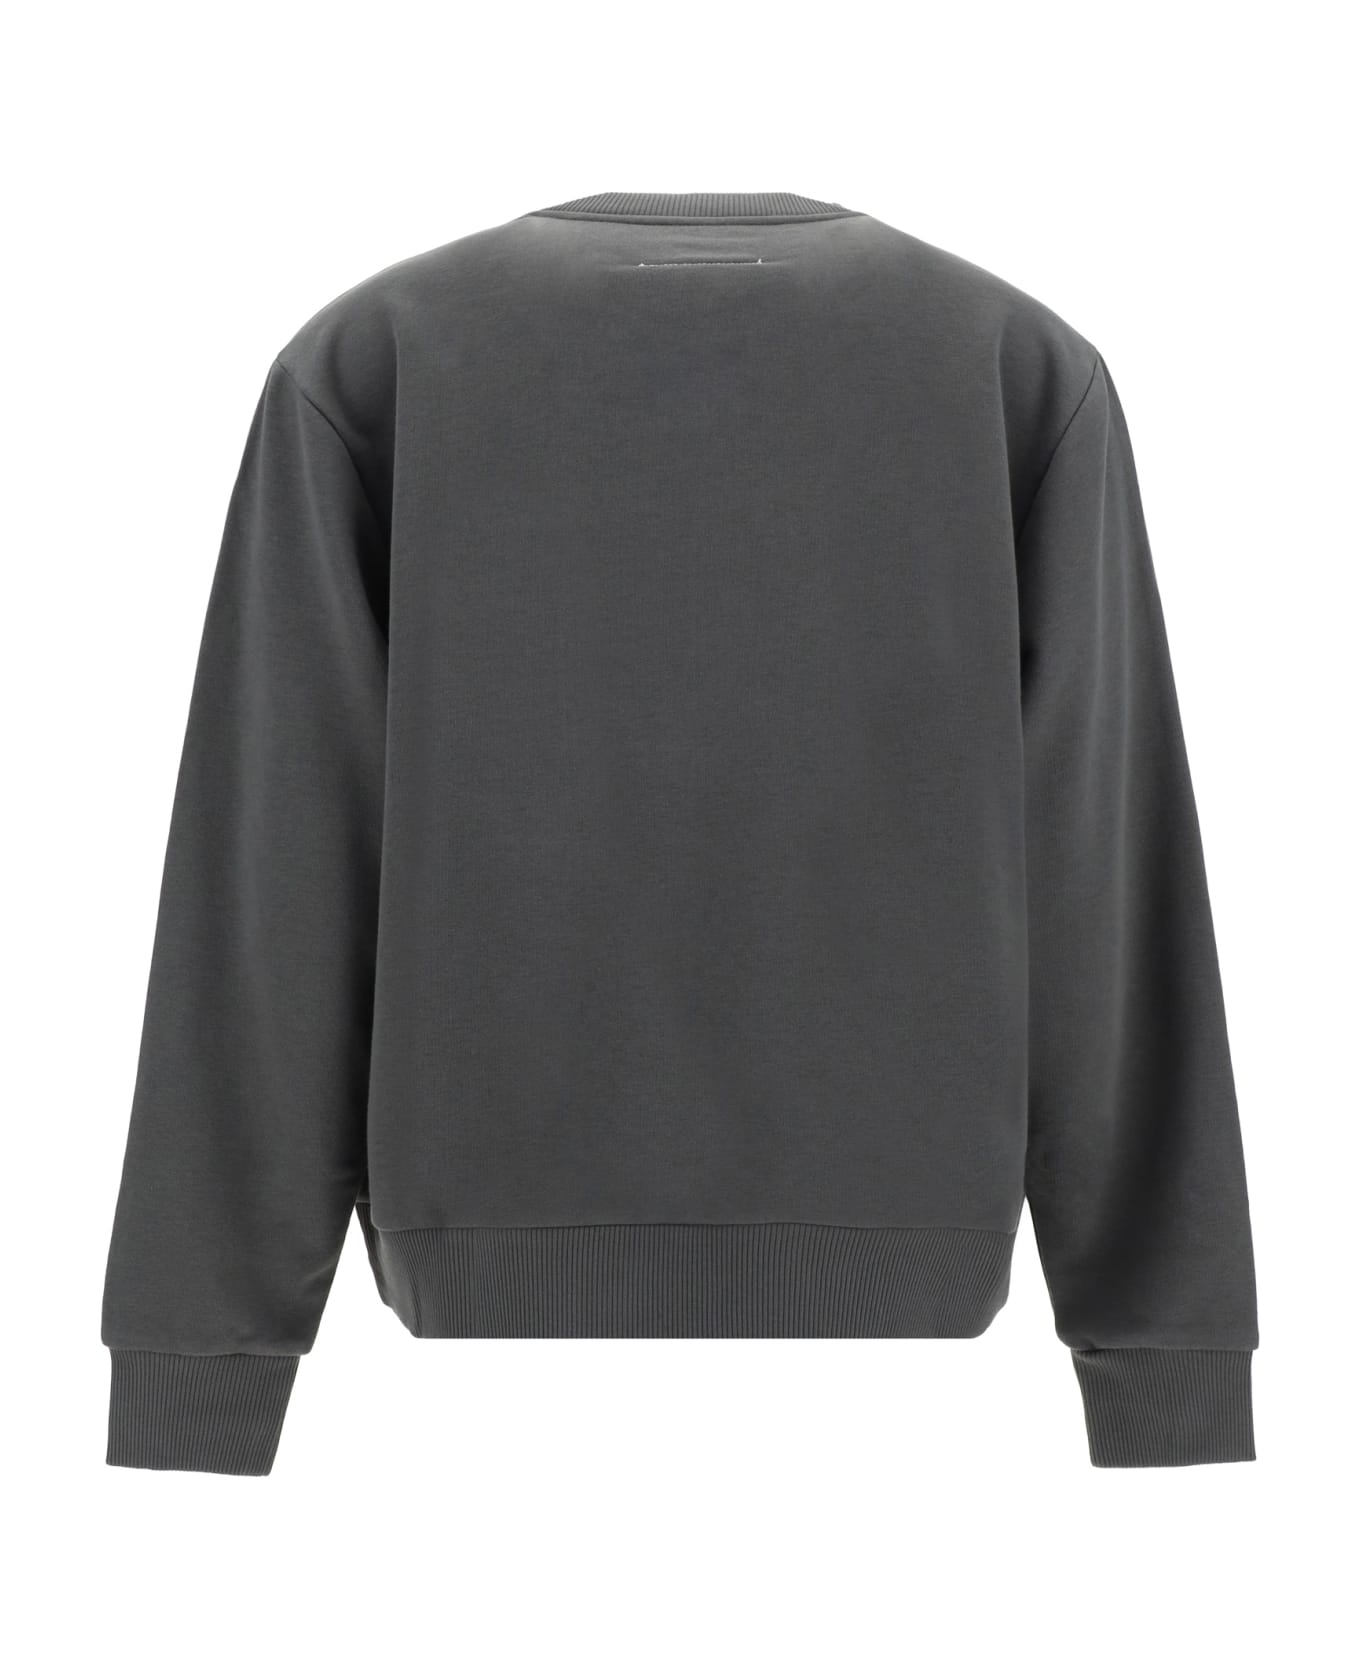 MM6 Maison Margiela Sweatshirt - Washed Grey